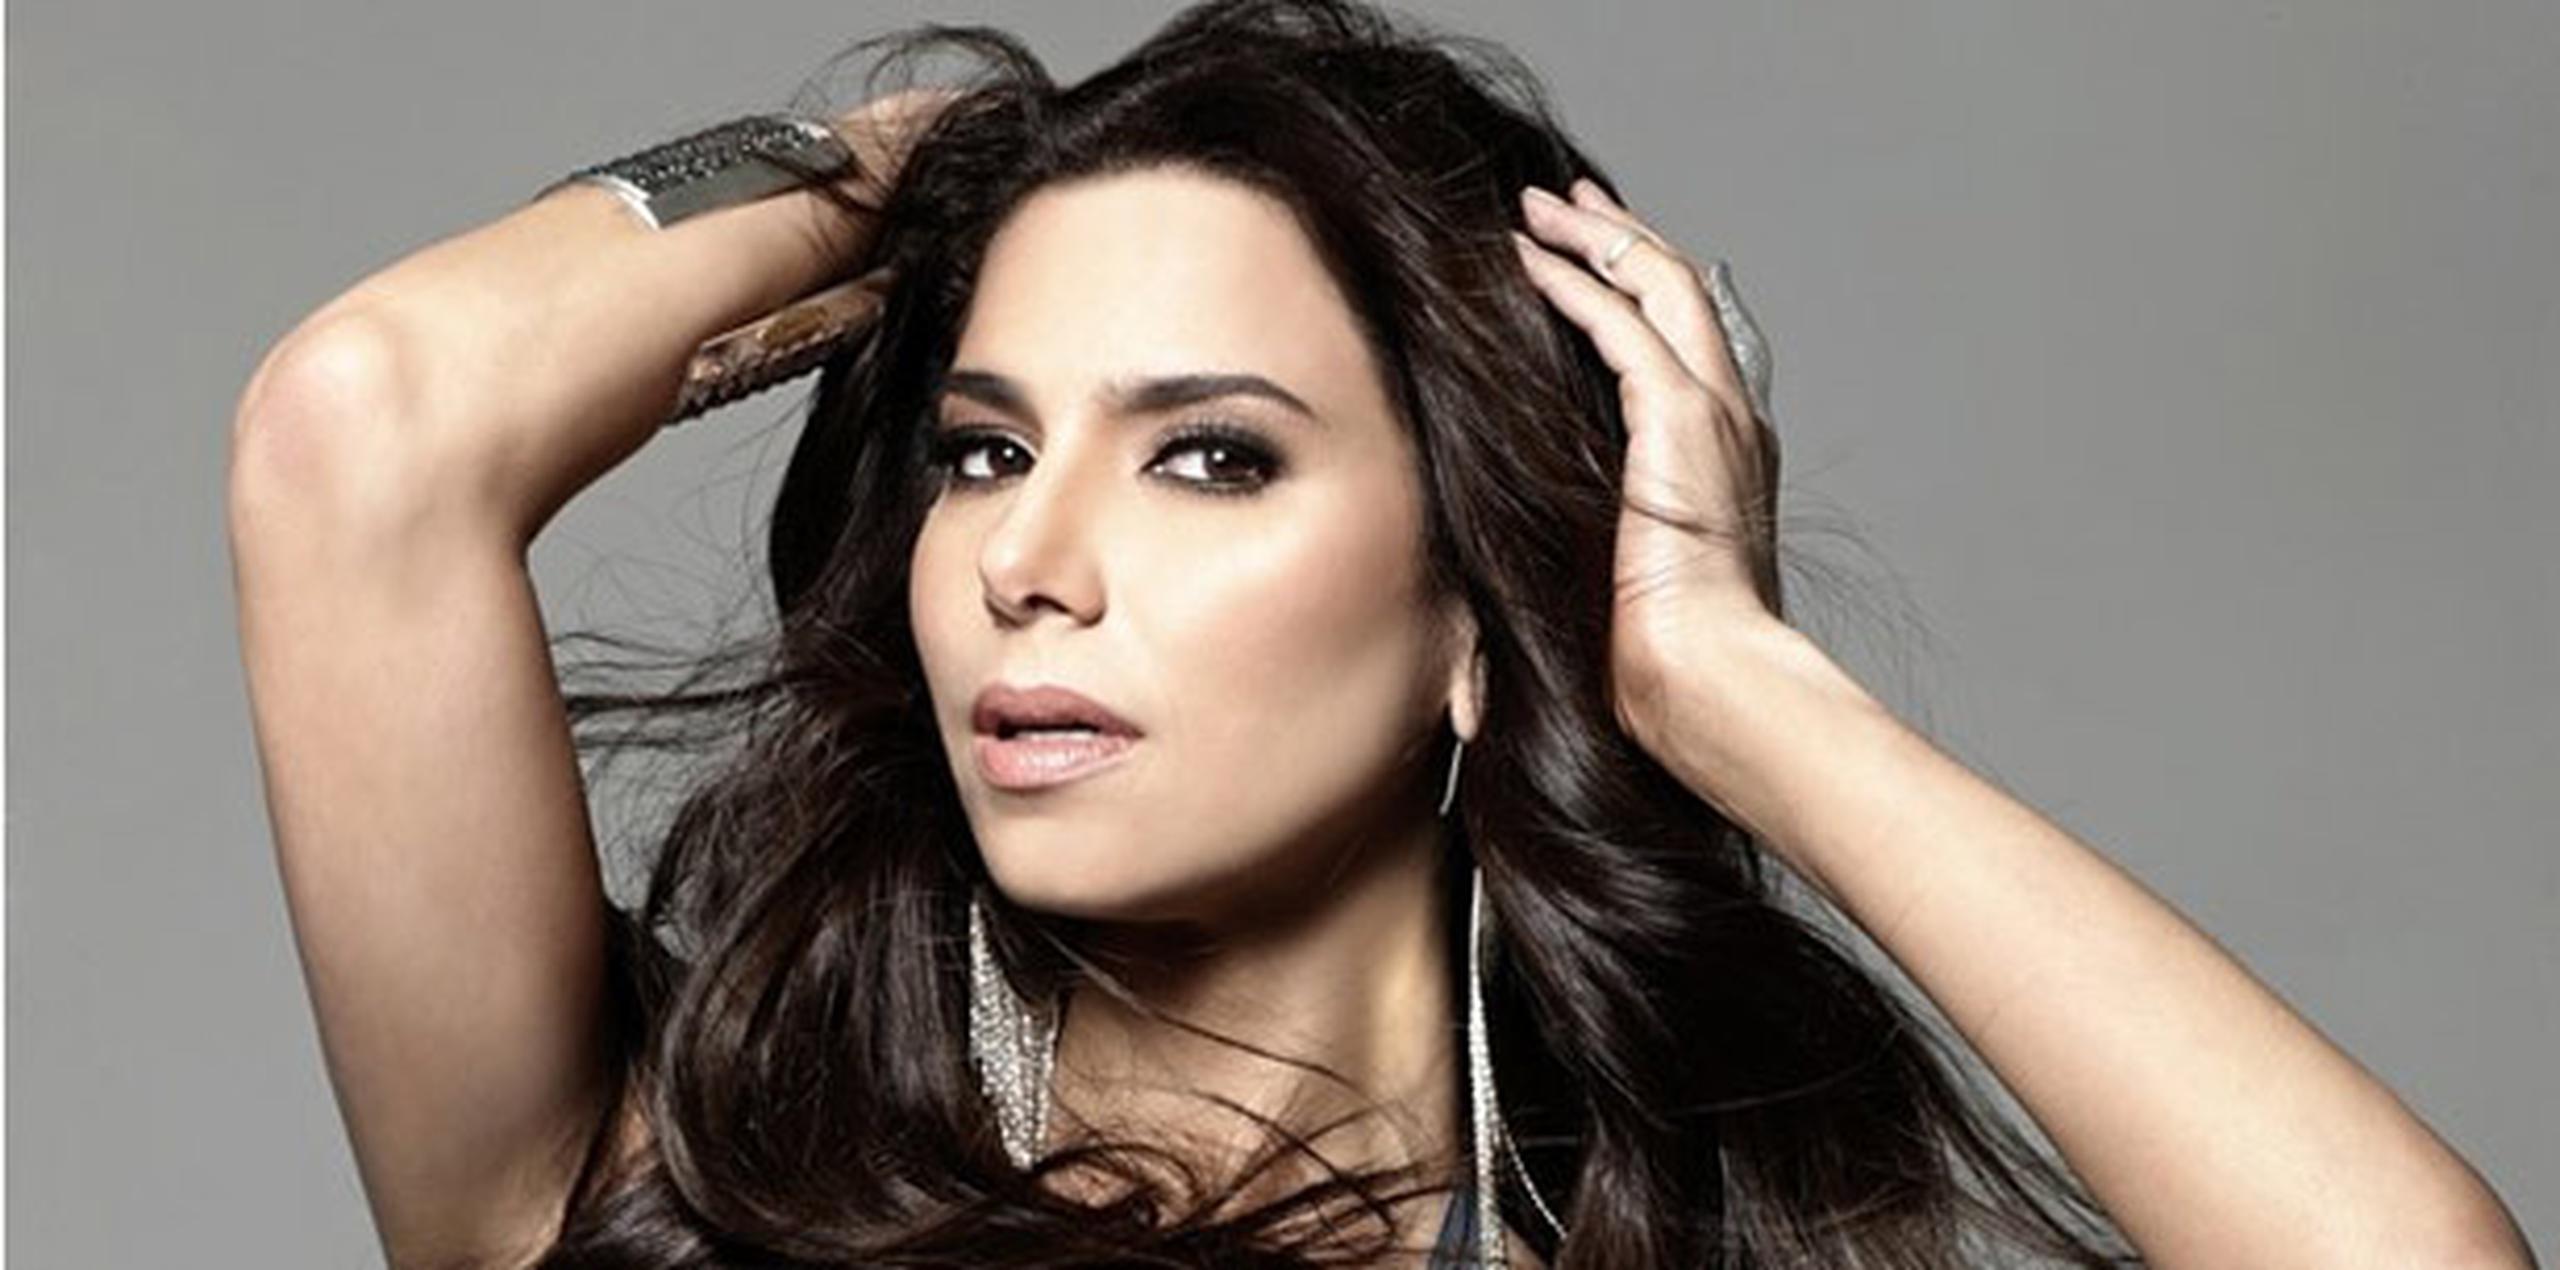 La actriz presentará un premio esta noche en la entrega de los Grammy Latino. (Archivo)